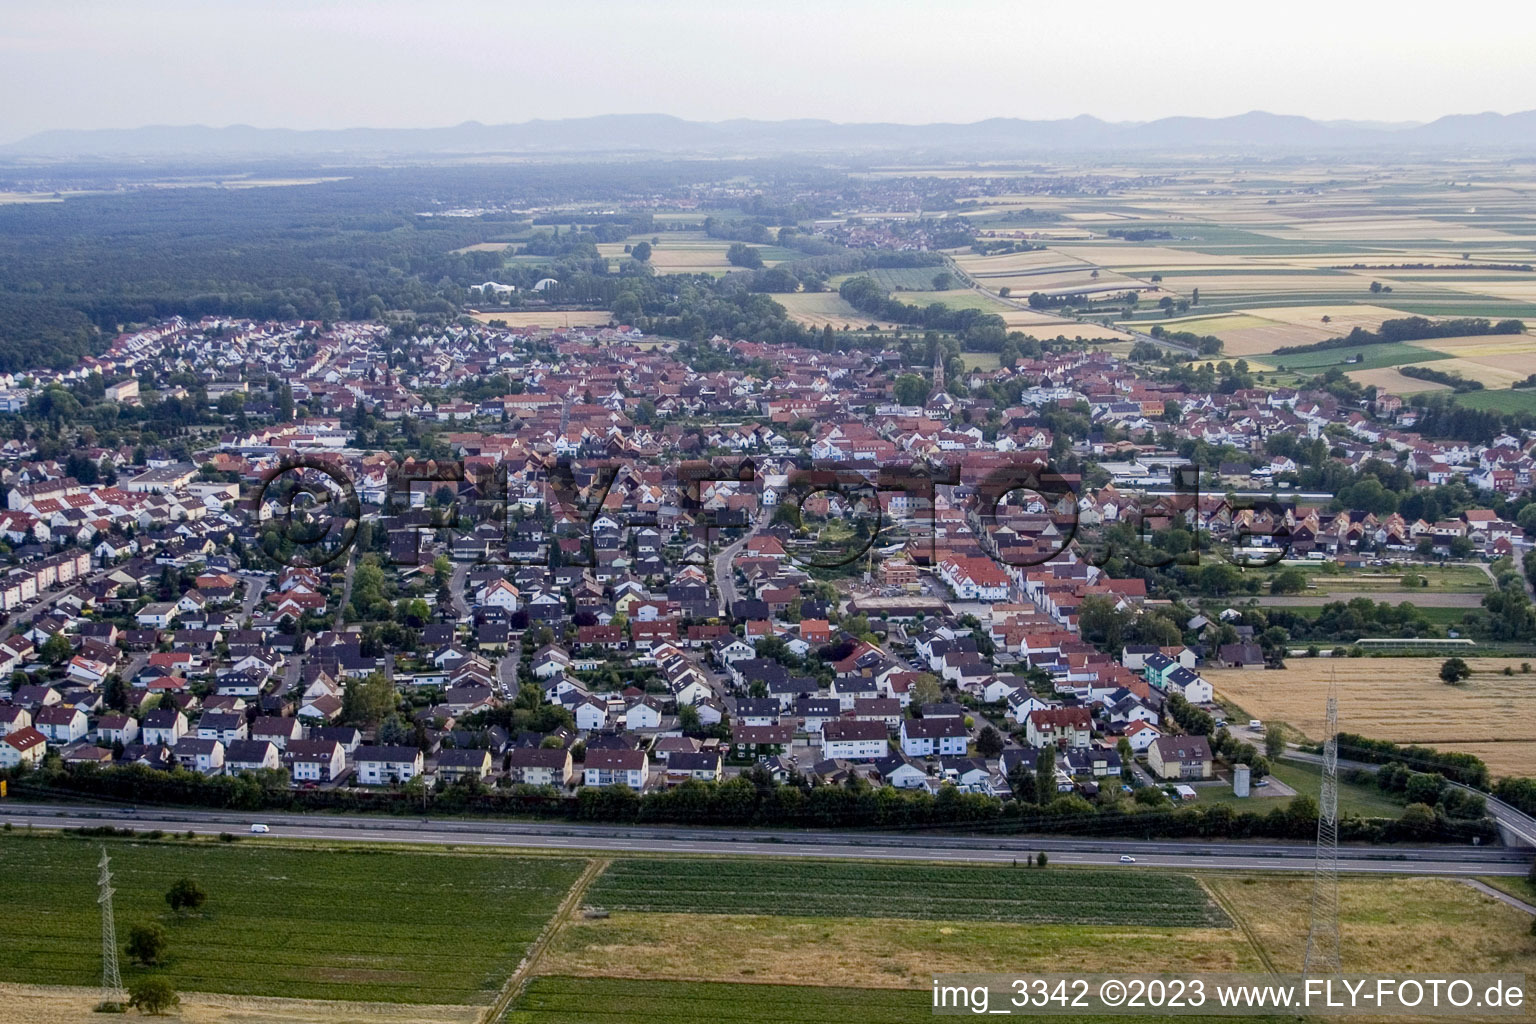 Vue aérienne de De l'est à Rülzheim dans le département Rhénanie-Palatinat, Allemagne